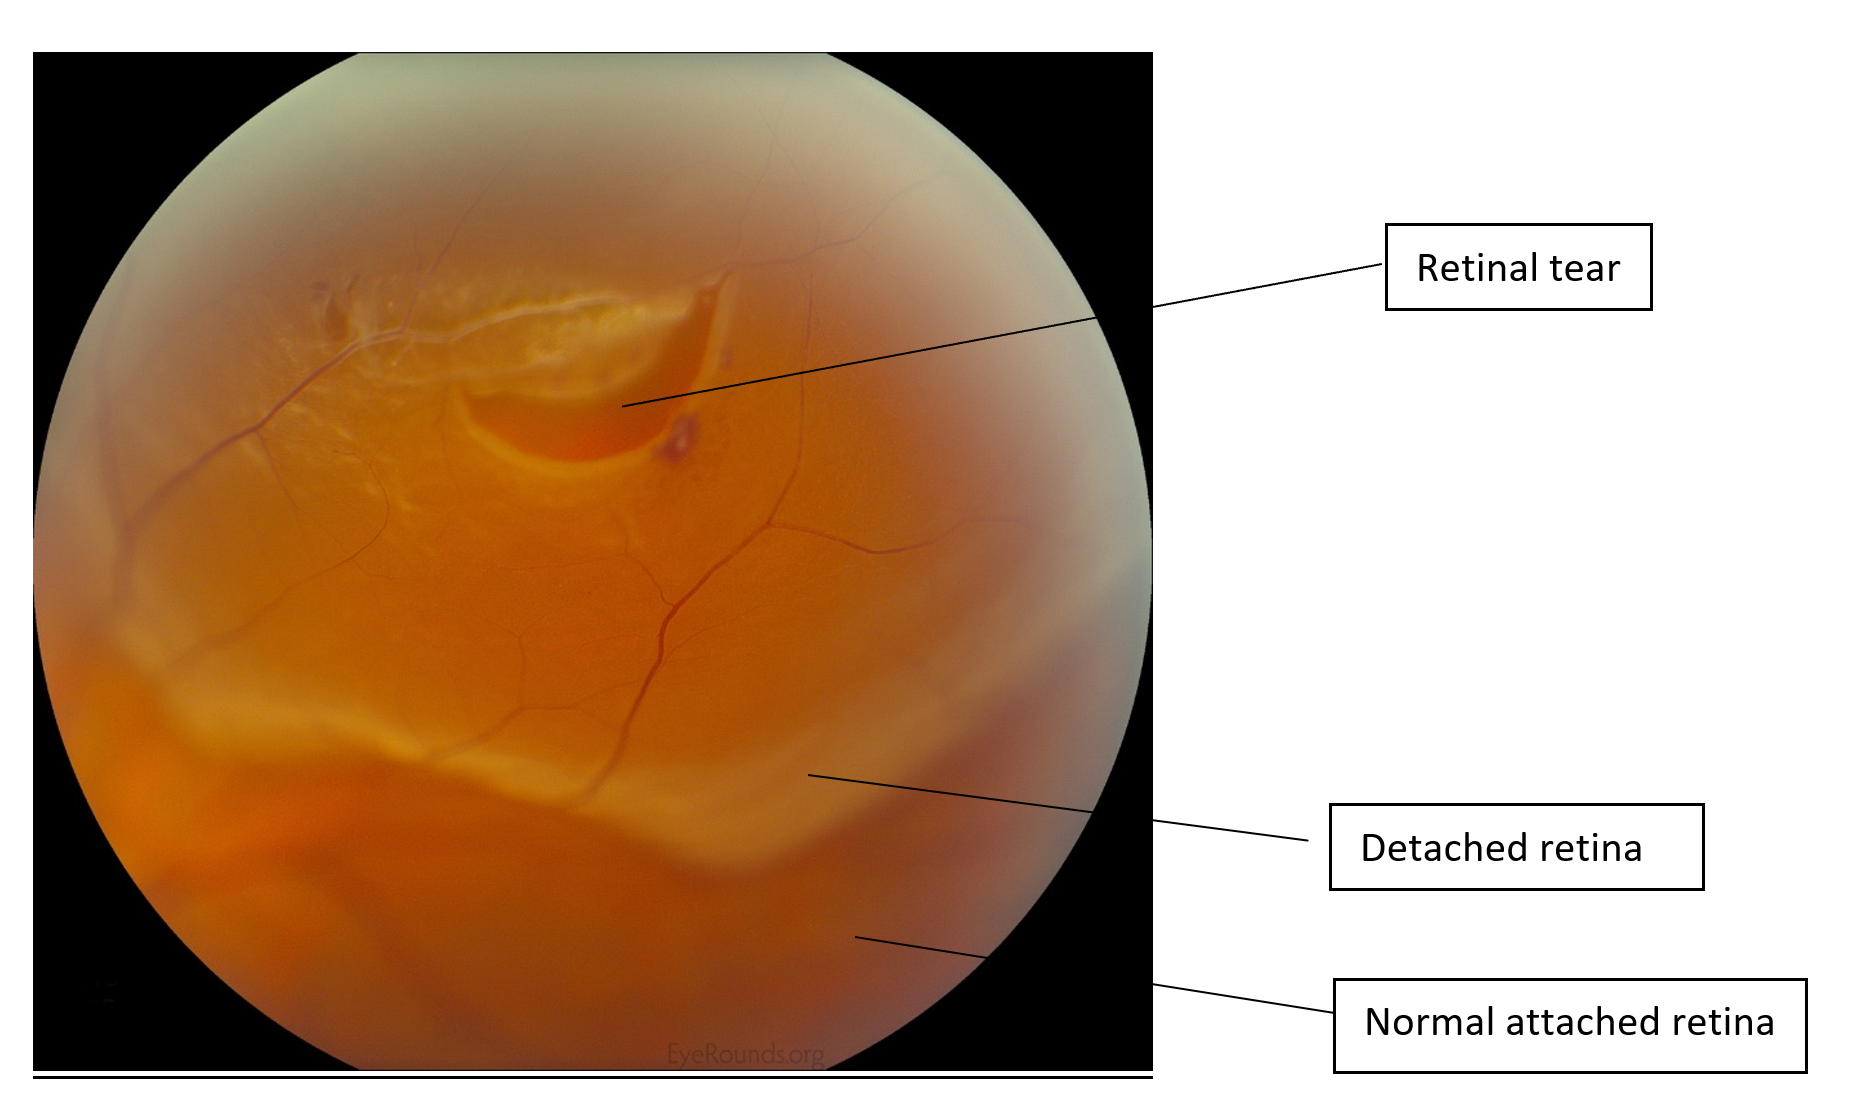 webmd detached retina symptoms